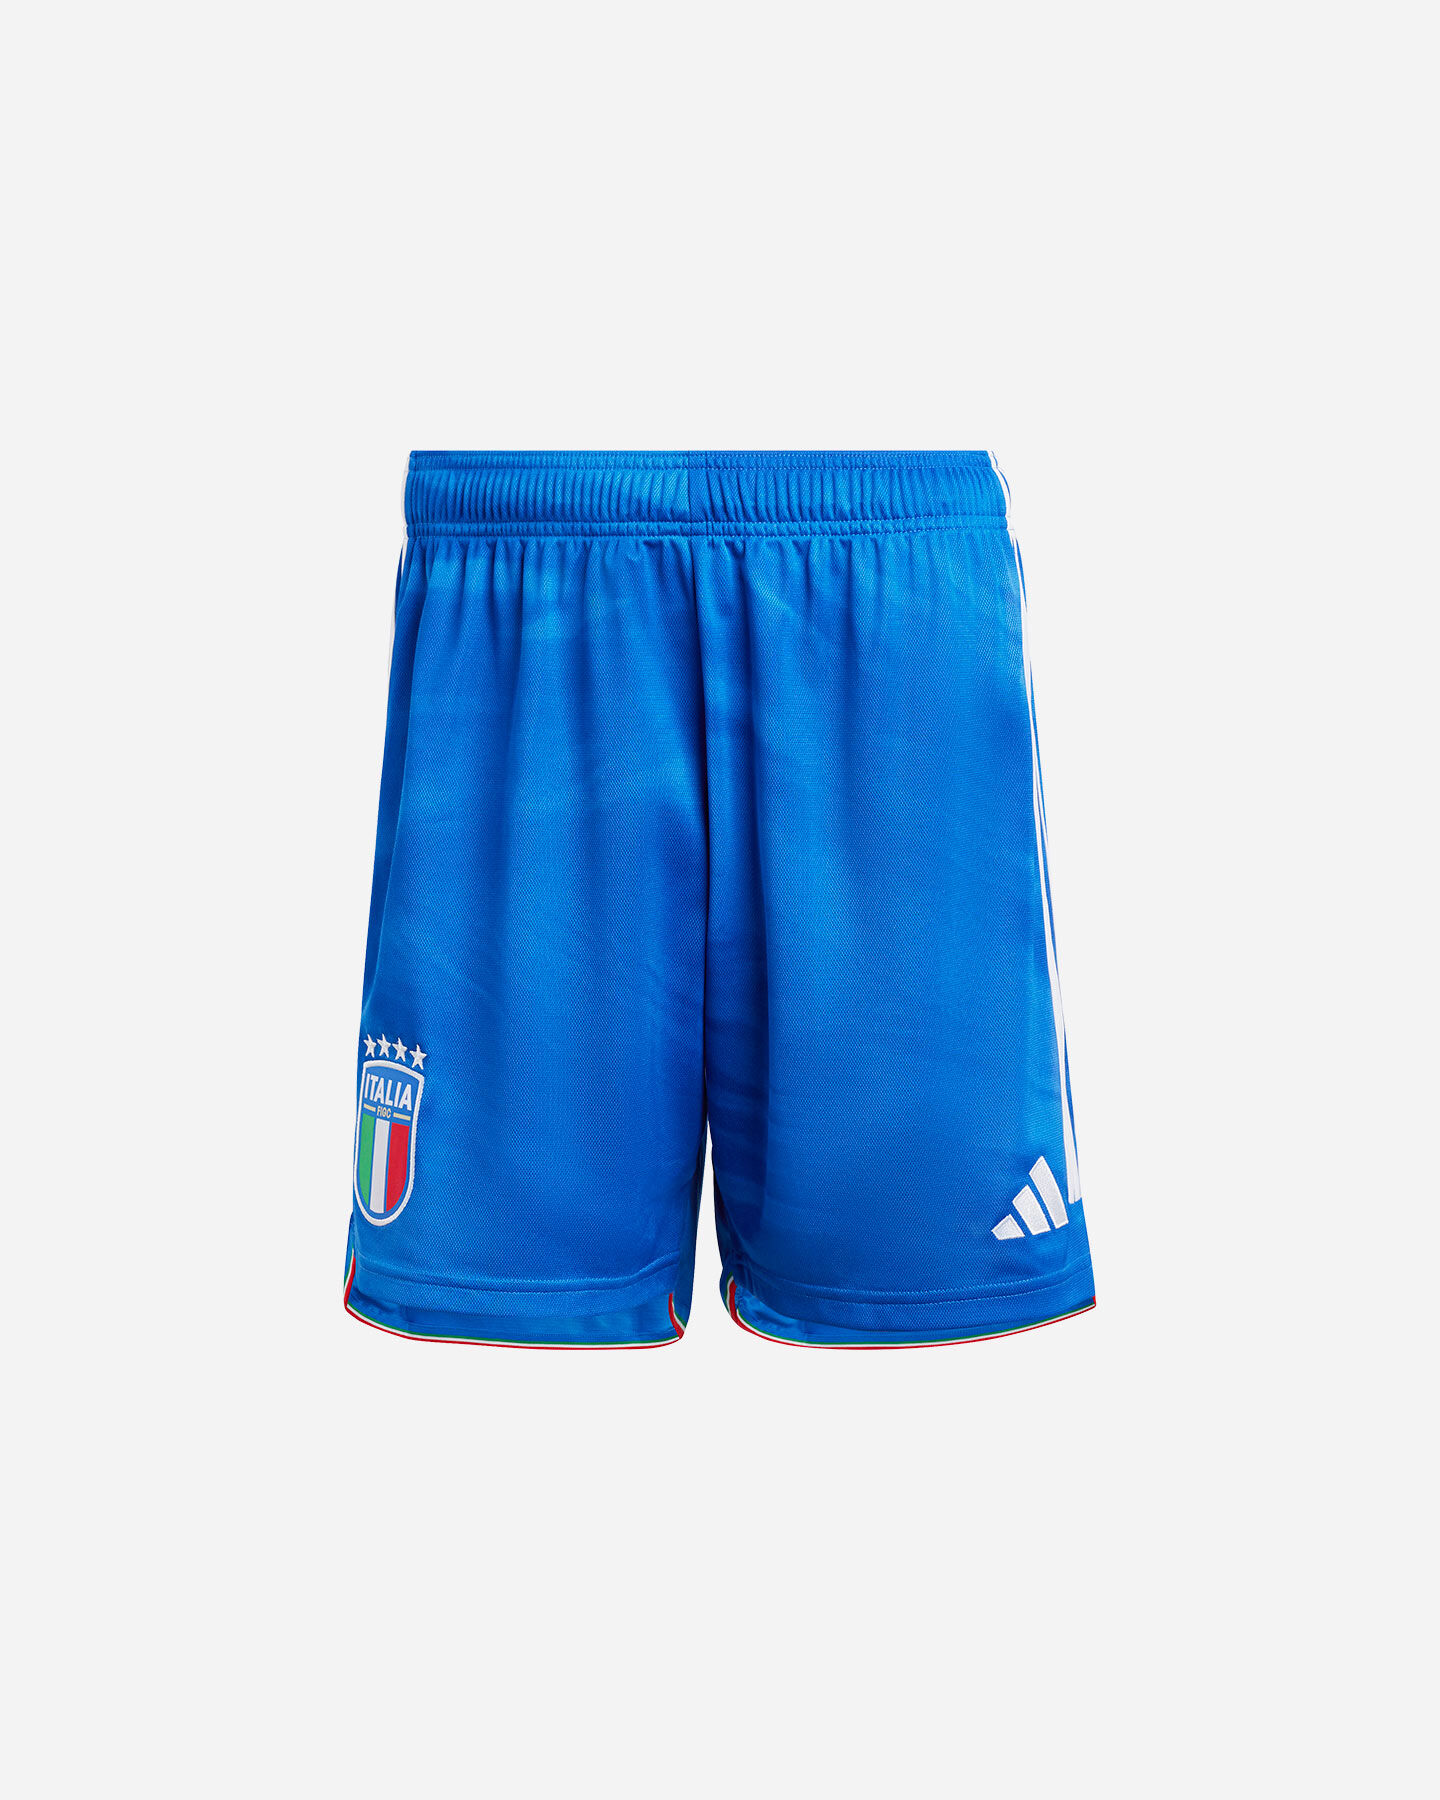  Pantaloncini calcio ADIDAS ITALIA HOME M S5518780|UNI|L scatto 0